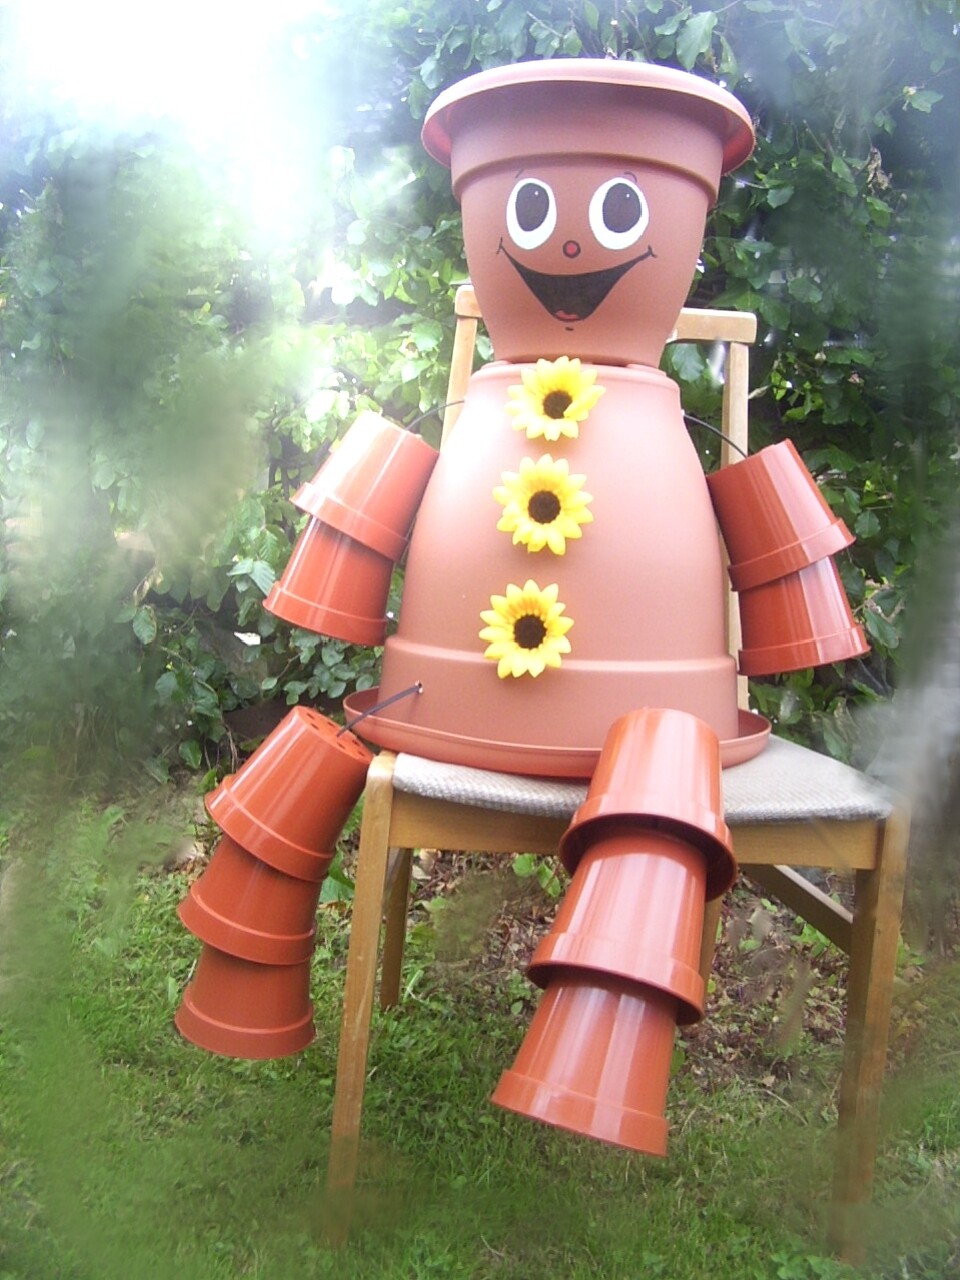 Flower Pot Man